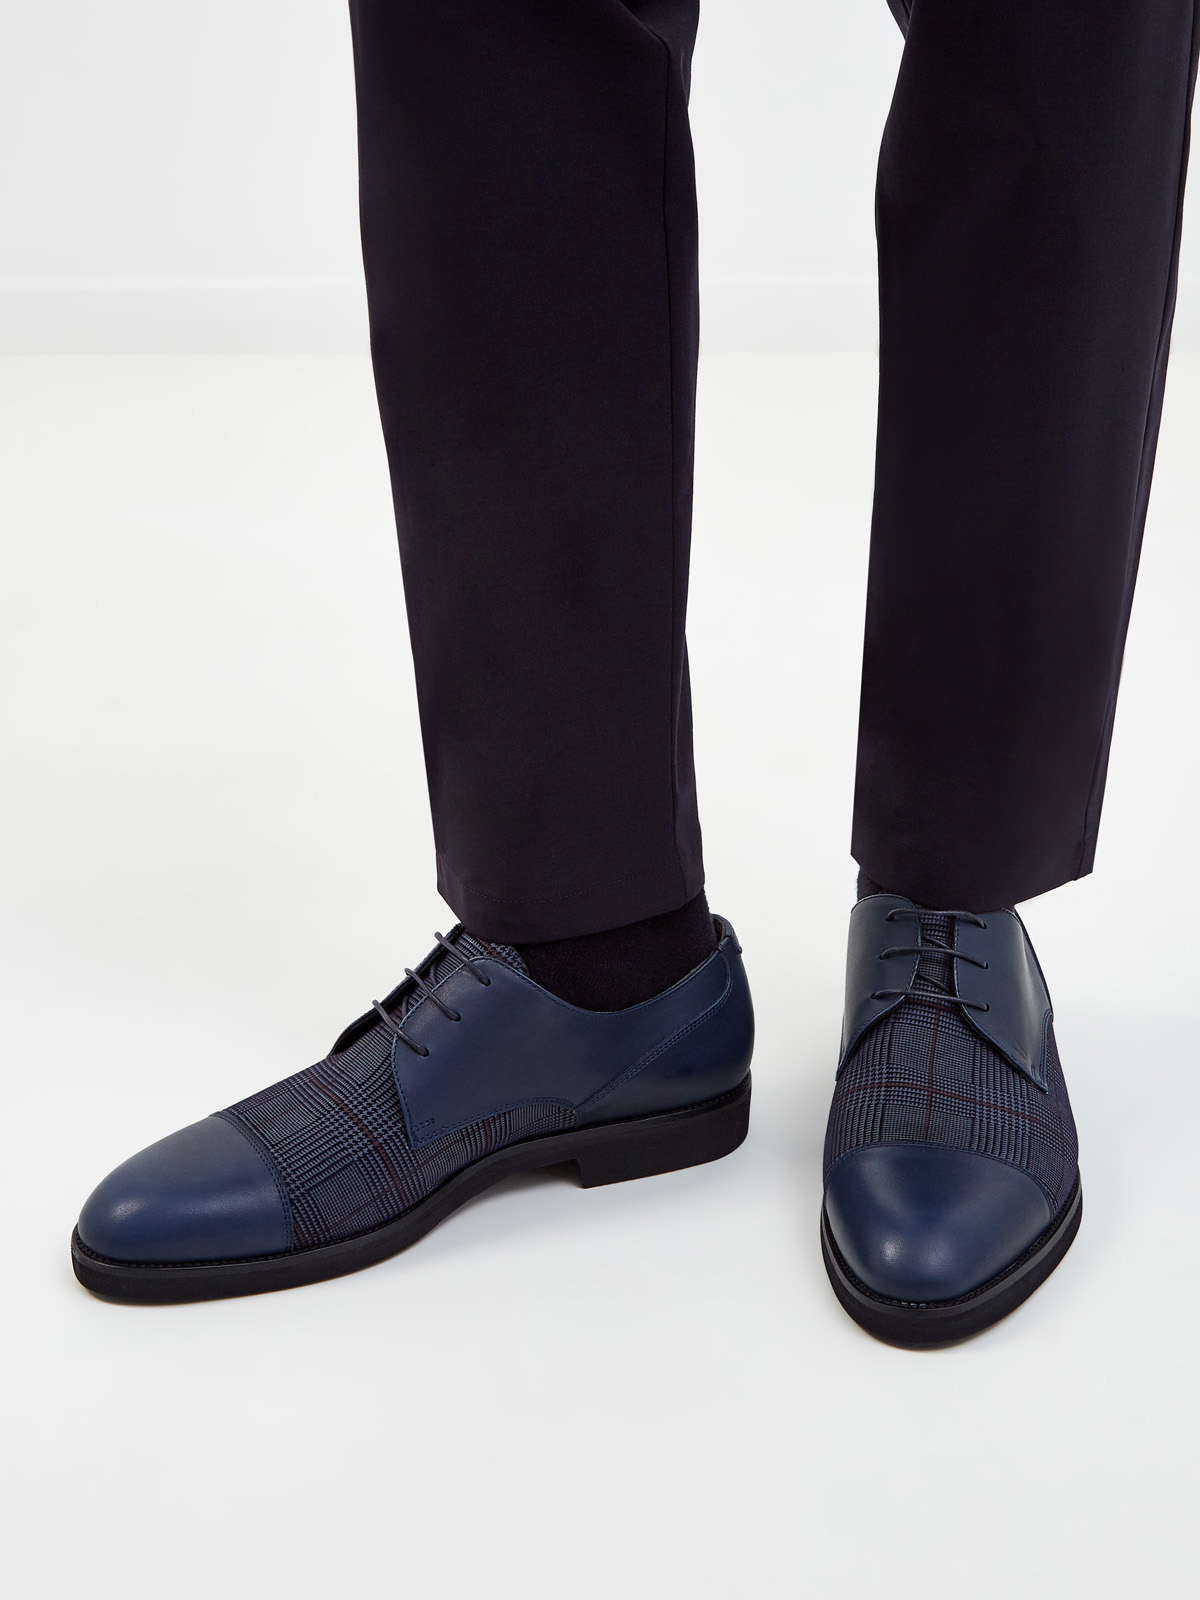 Кожаные туфли-дерби с принтом «Принц Уэльский» MORESCHI, цвет синий, размер 40.5;41;42;42.5;43;43.5;44 - фото 2